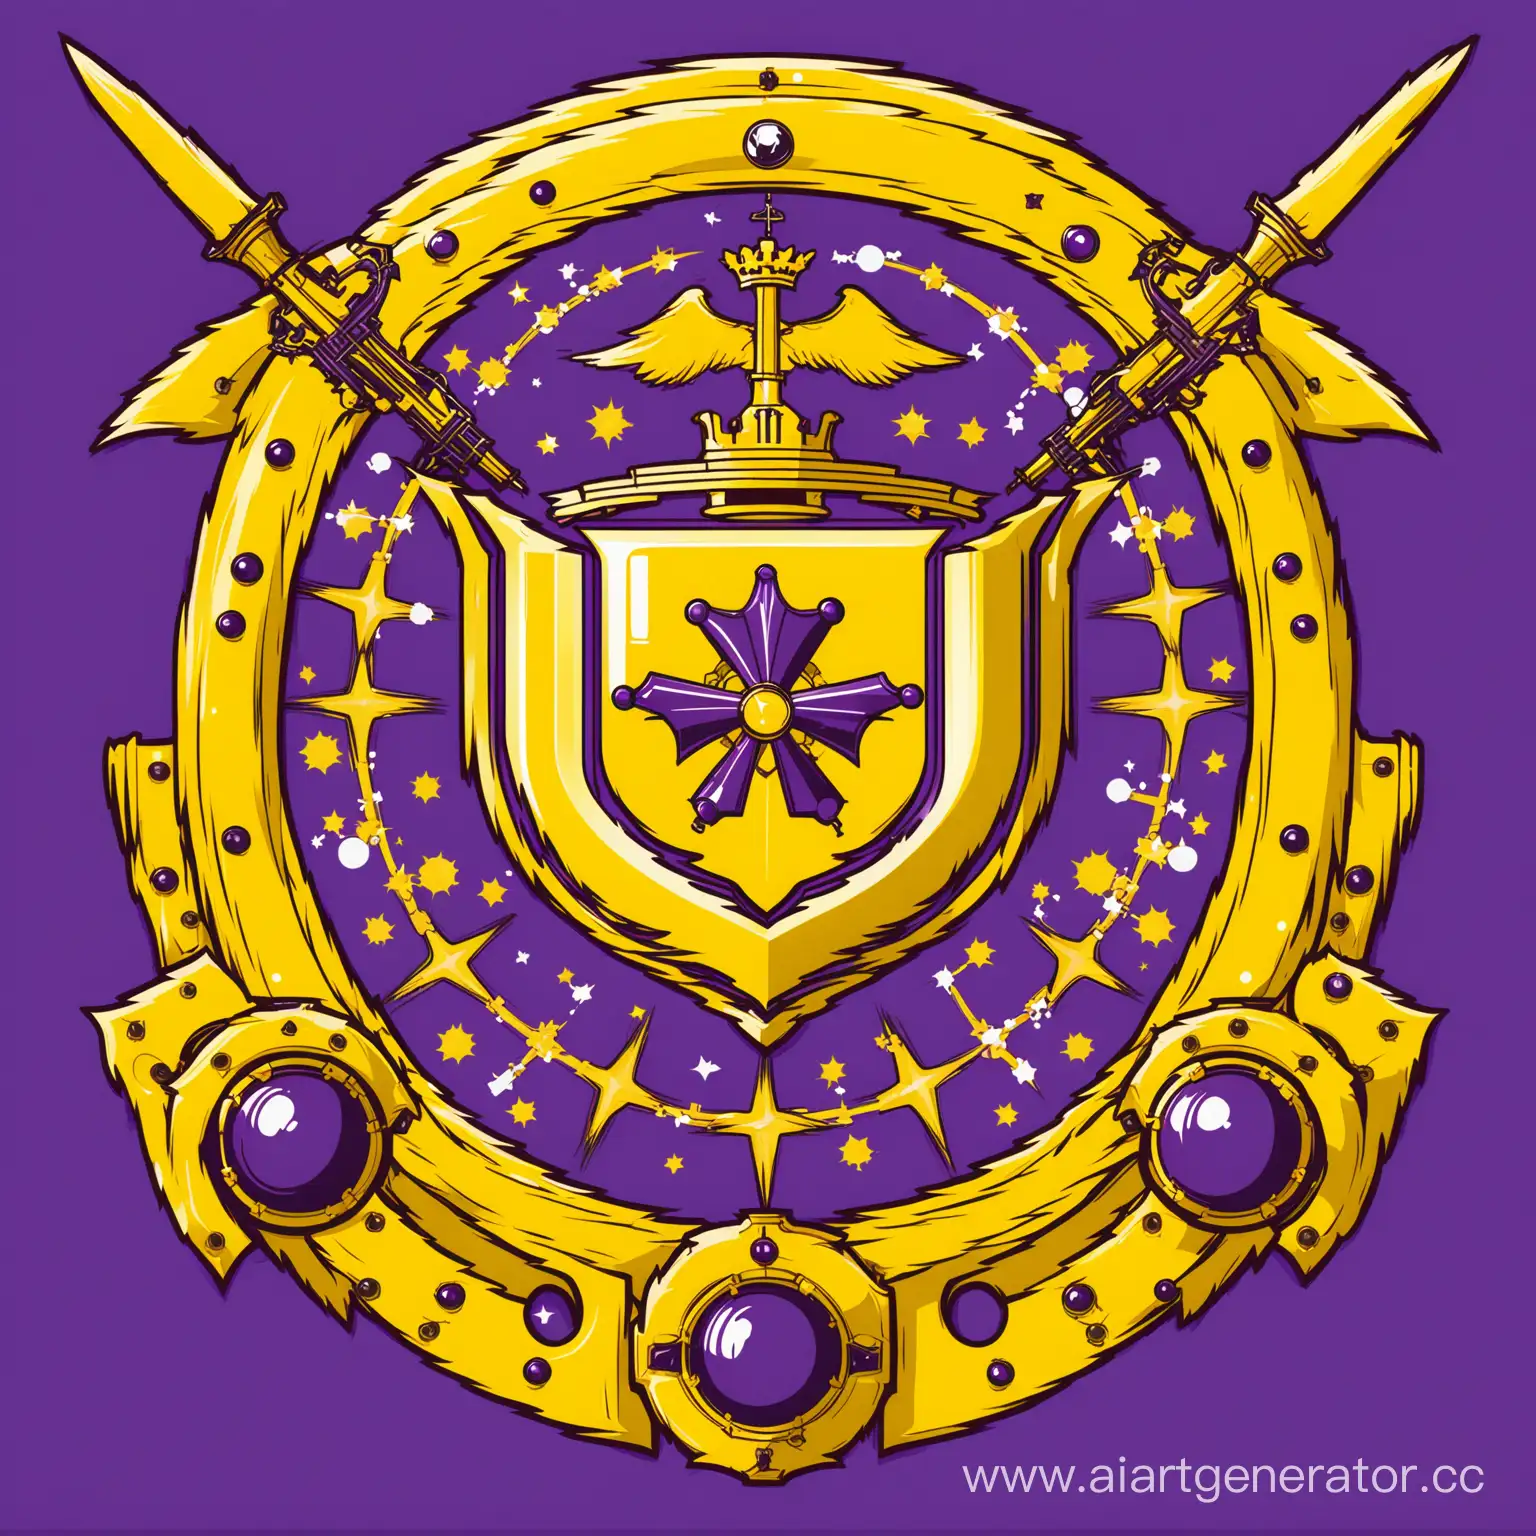 герб Империи Эпсилон, Эпсилон выдуманная держава Короли Механизмов и Химии,  в фиолетовом и жёлтом цвете, герб связанный с механизмами и химией